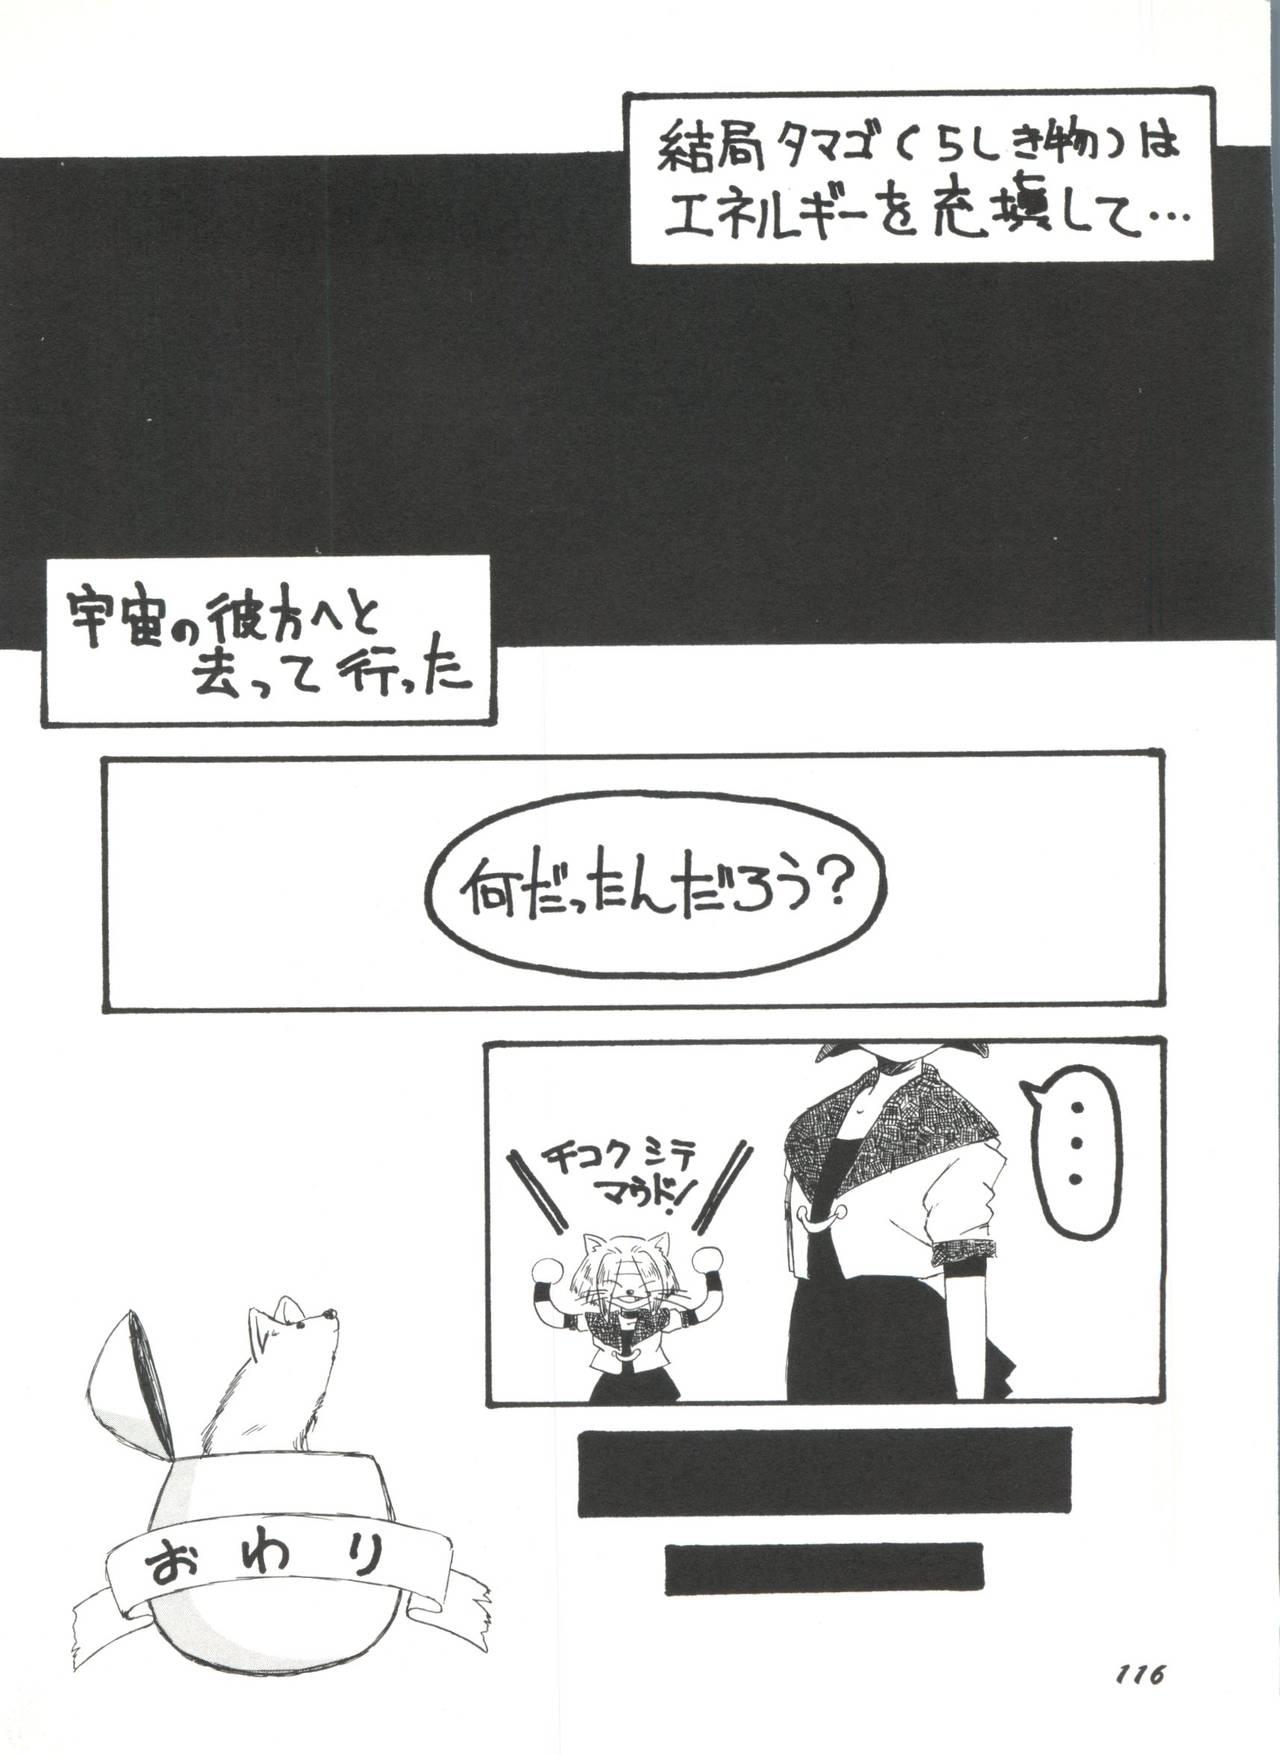 Bishoujo Doujinshi Anthology 1 117